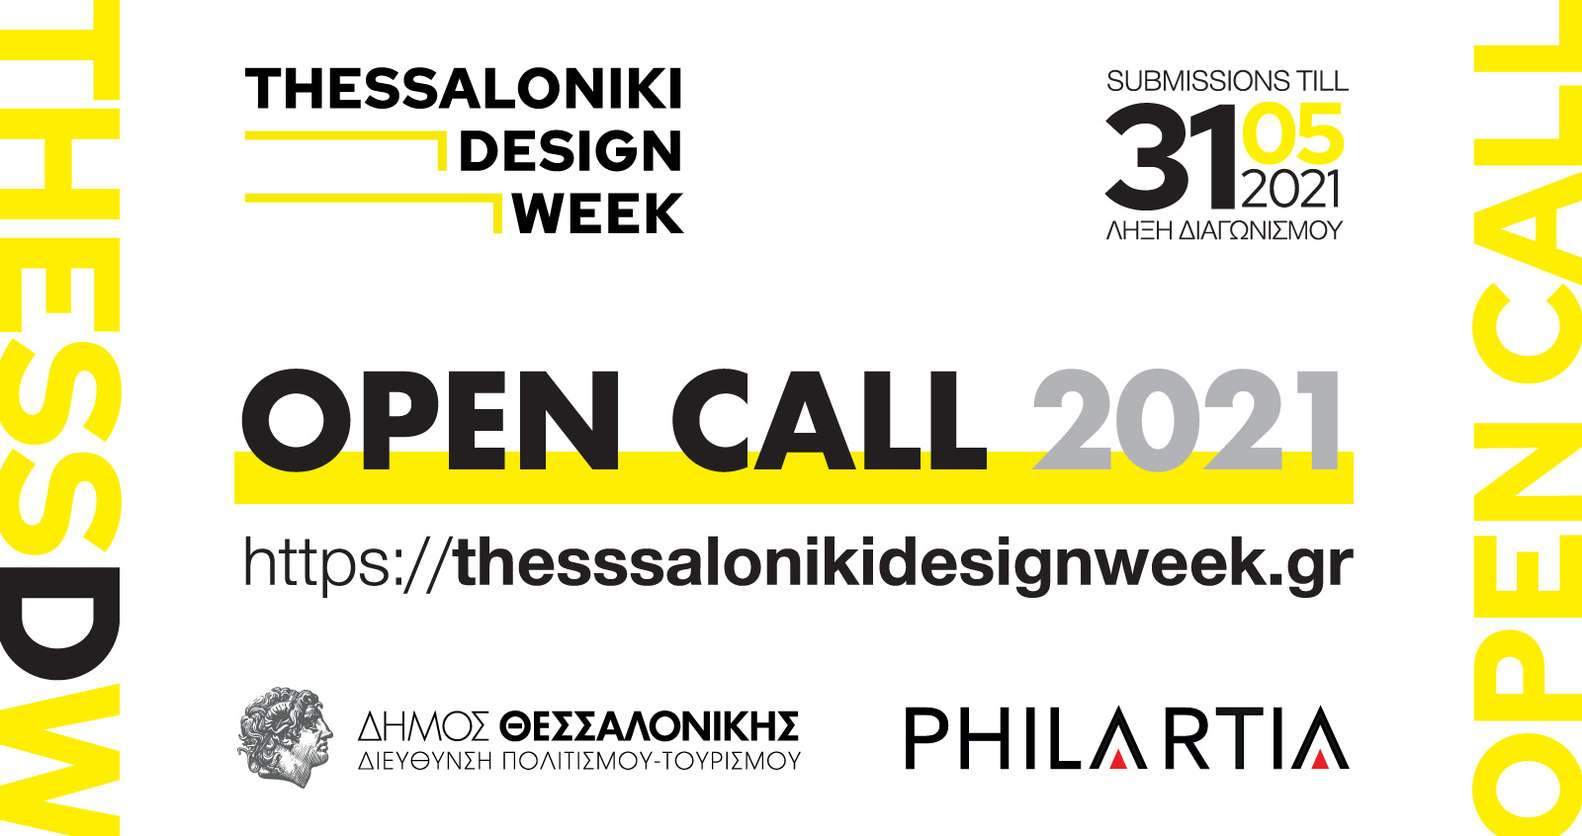 أسبوع ثيسالونيكي للتصميم ، دعوة لتقديم الطلبات: ابتكار في التصميم